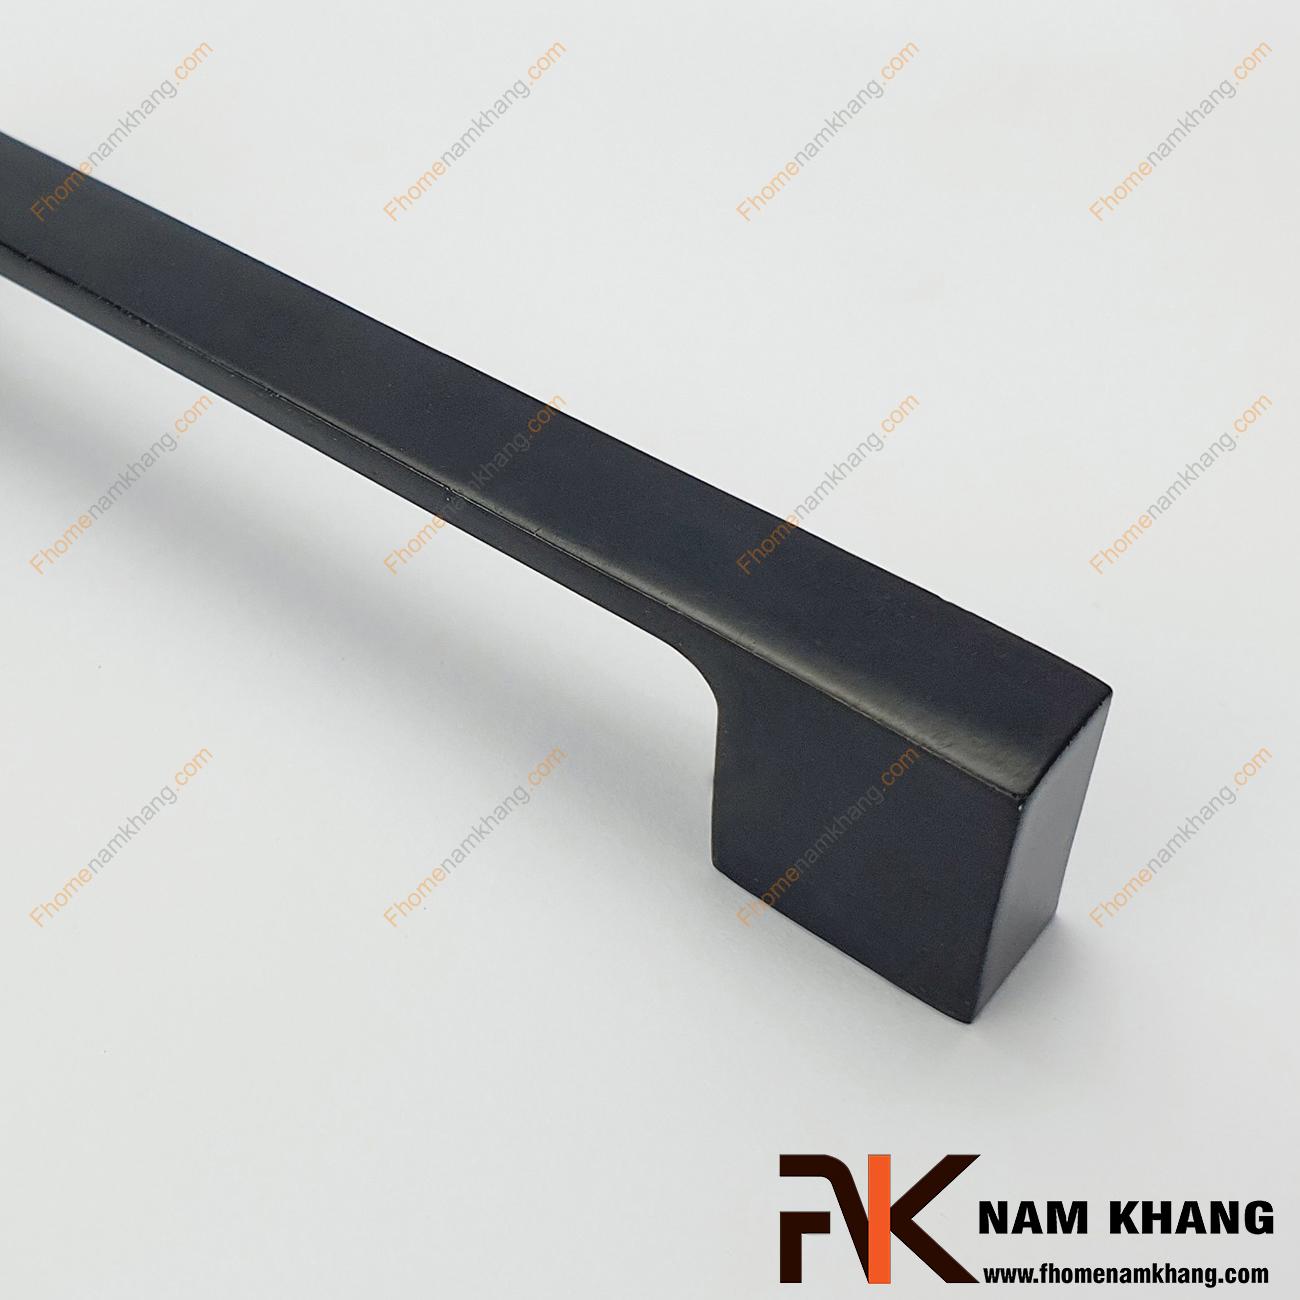 Tay nắm tủ màu đen dạng thanh NK143L-D được thiết kế dựa trên hợp kim chất lượng khuôn dạng vuông tạo cảm giác cầm nắm vô cùng chắc chắn và thao tác thực hiện cũng vô cùng dễ dàng.